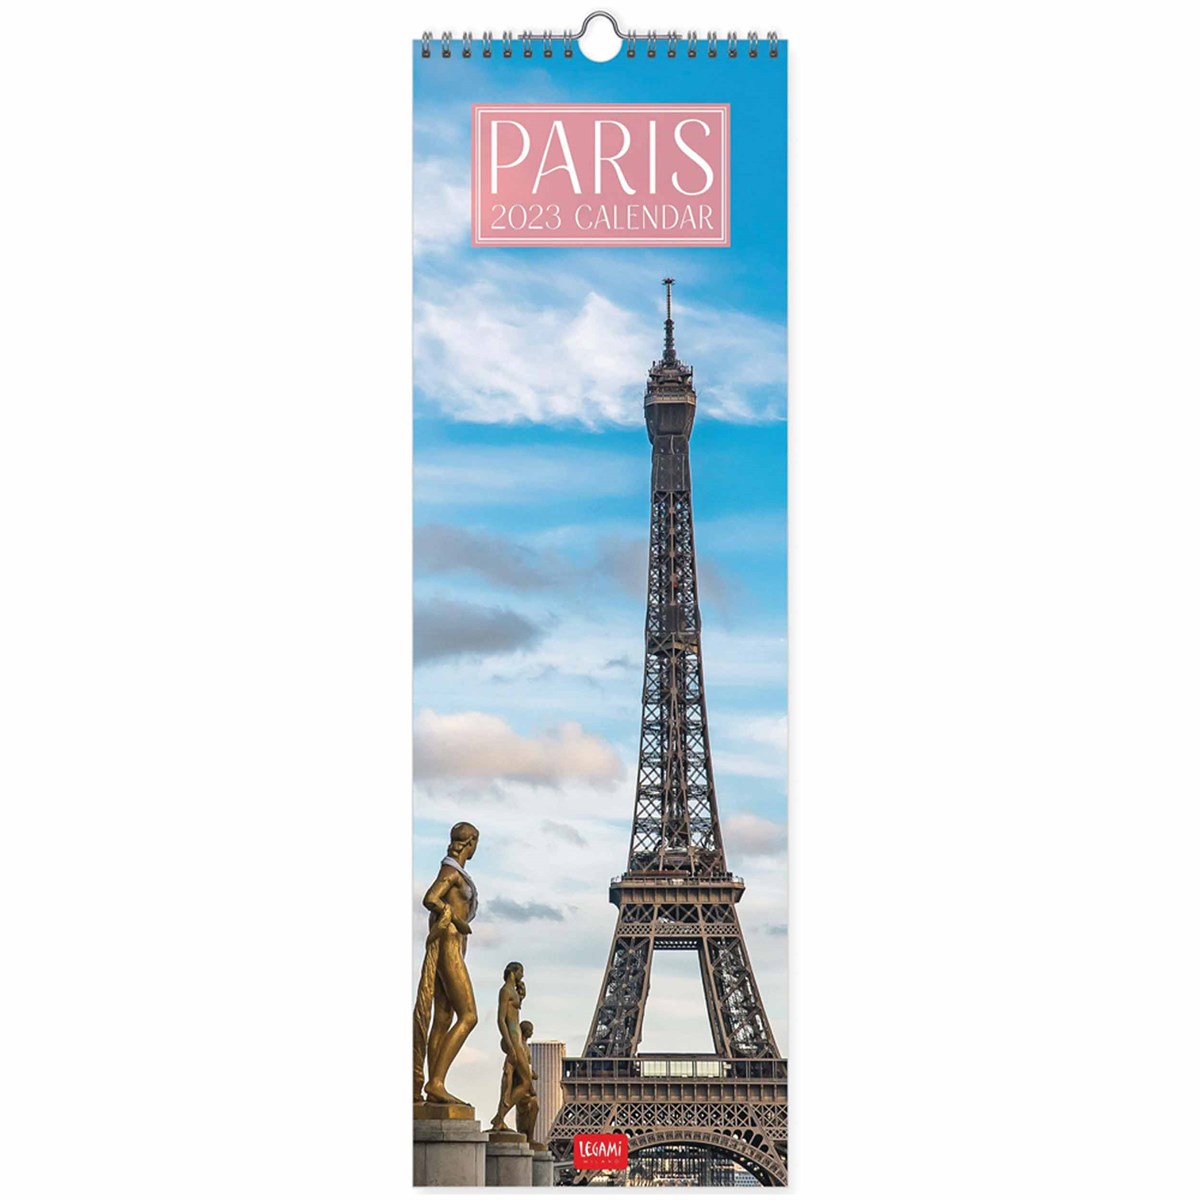 Paris Deluxe Slim 2023 Calendars